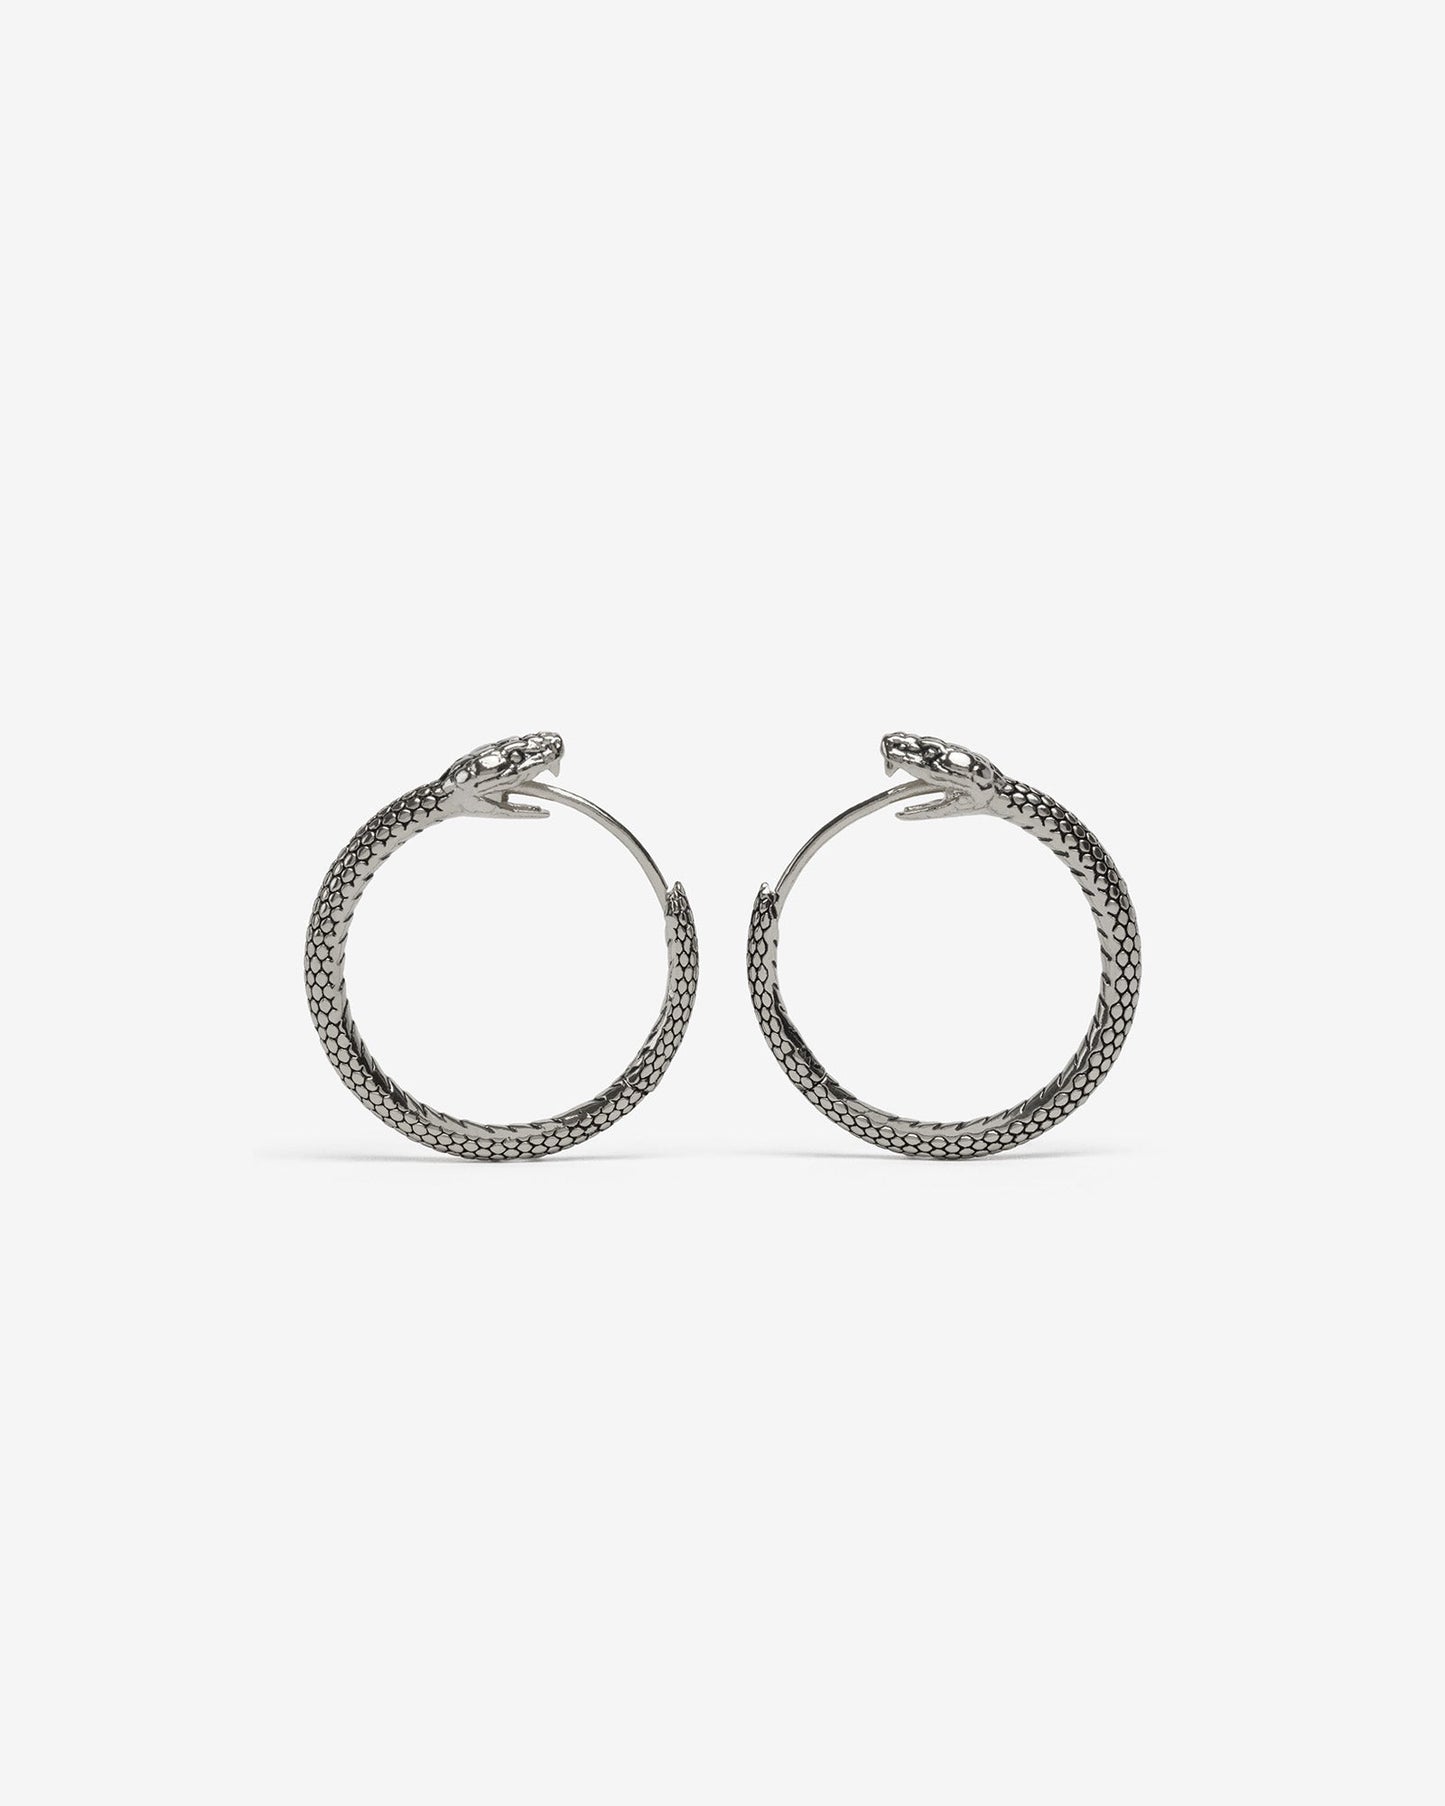 Ouroboros Hoop Earrings - Hoops - Ask and Embla